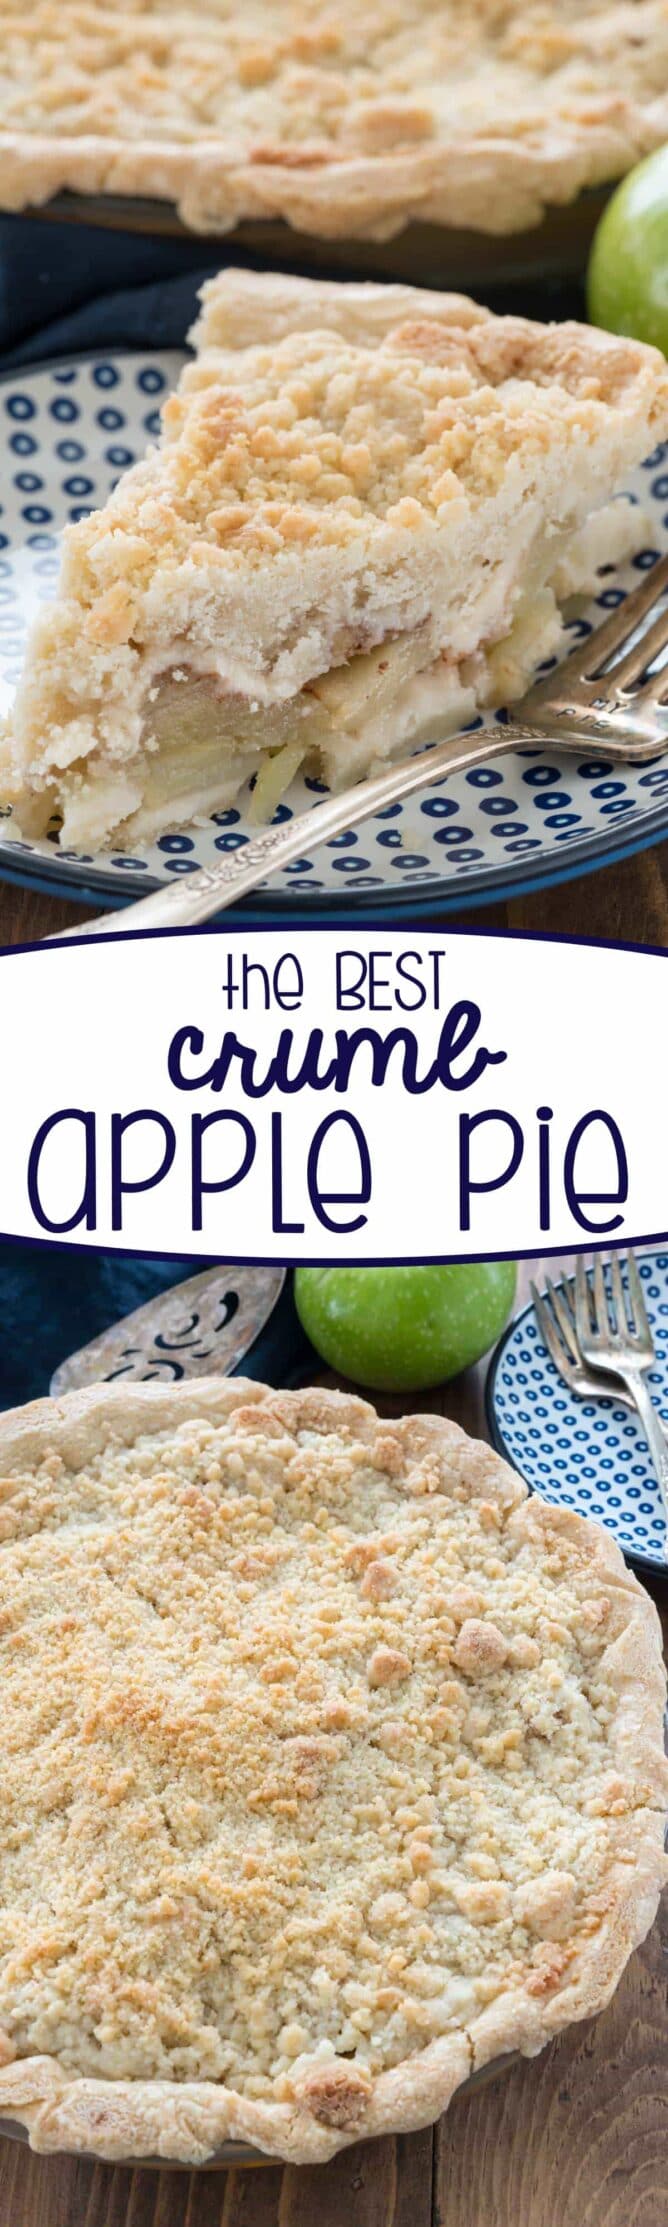 crumb apple pie recipe